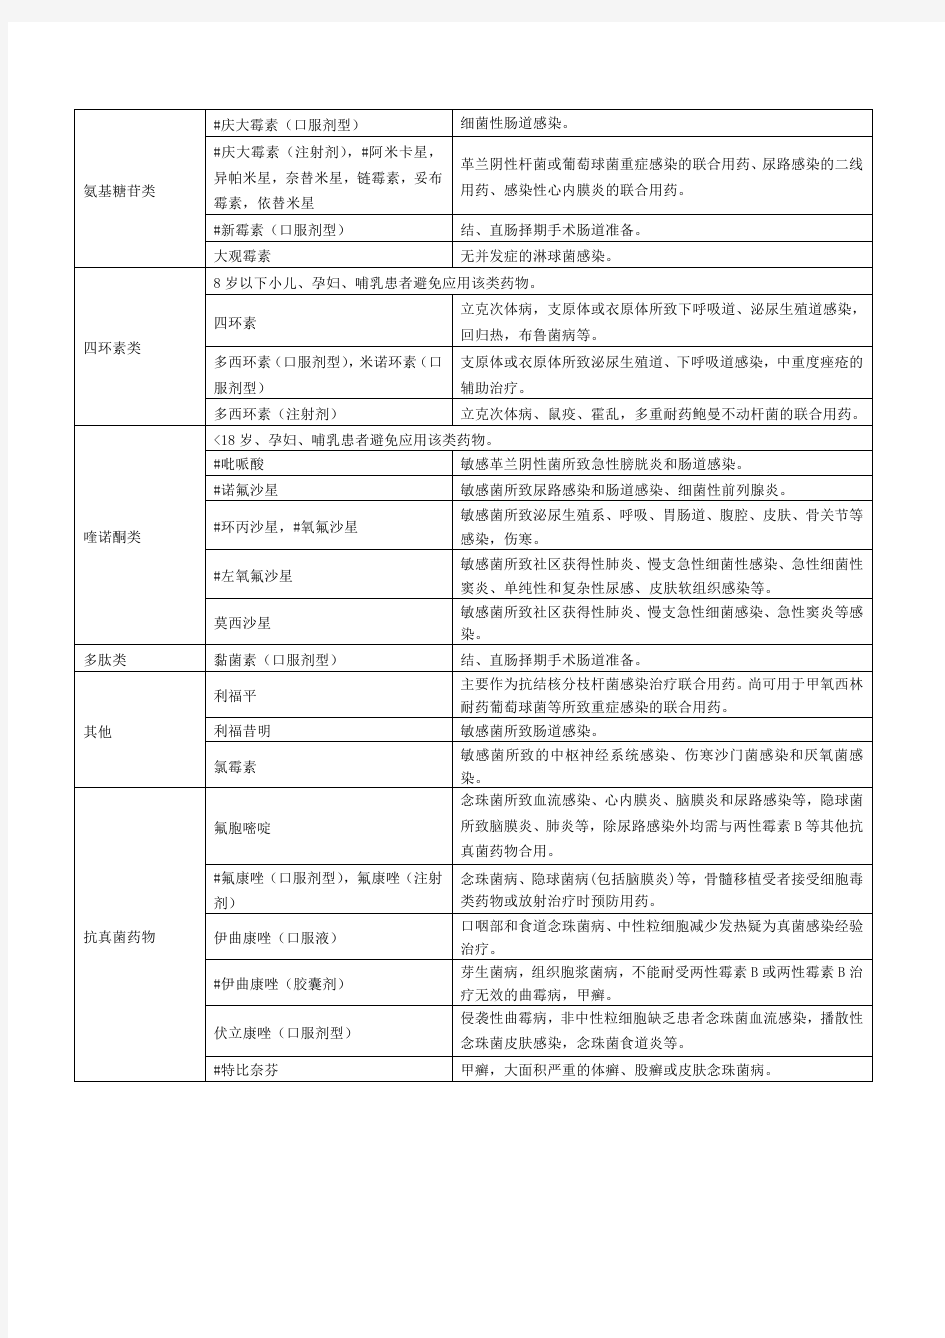 上海市抗菌药物临床应用分级管理目录 2012 年版